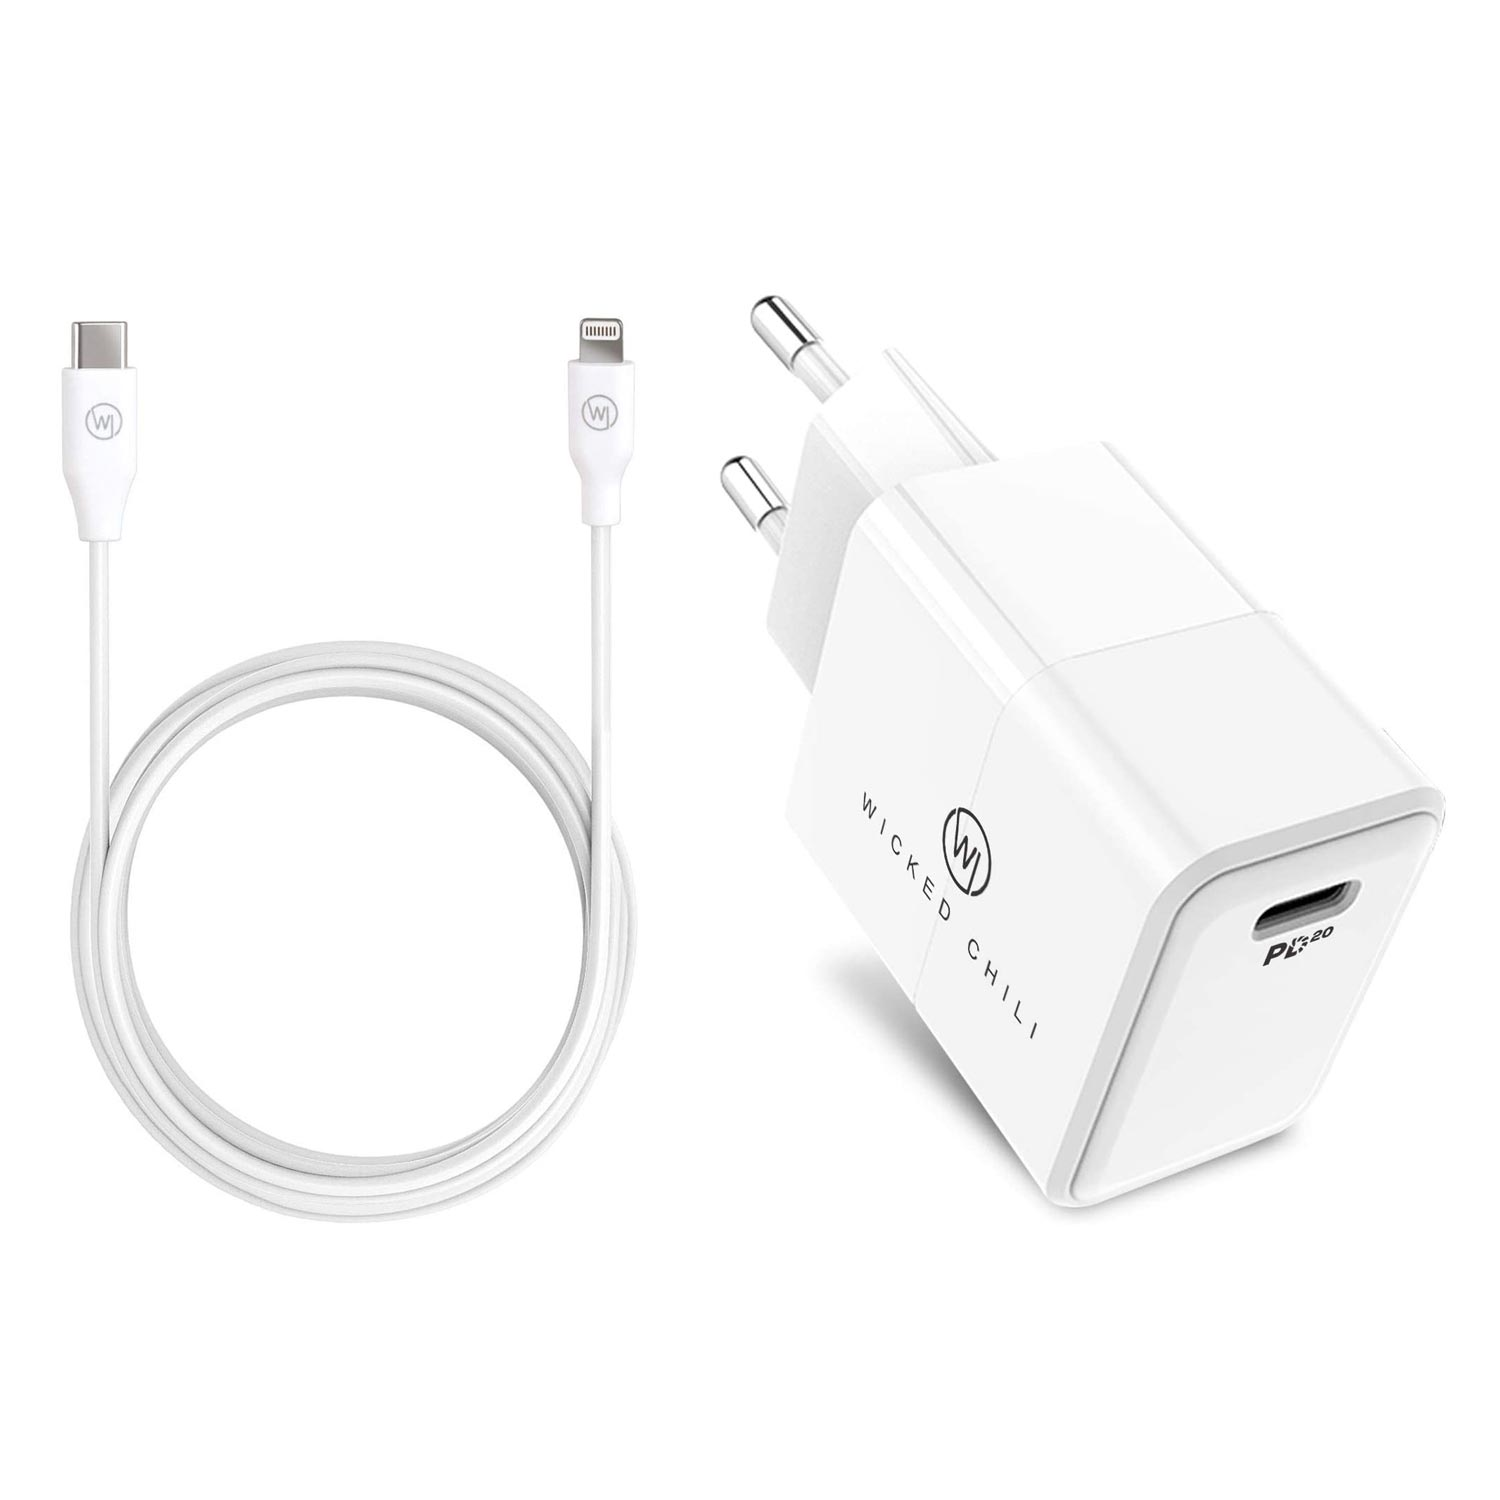 WICKED CHILI 20W Netzteil mit Lightning Ladekabel Fast C für / 11 auf / 12 USB 1m USB-C / 14 13 Netzteil iPhone Lade-Set Charge